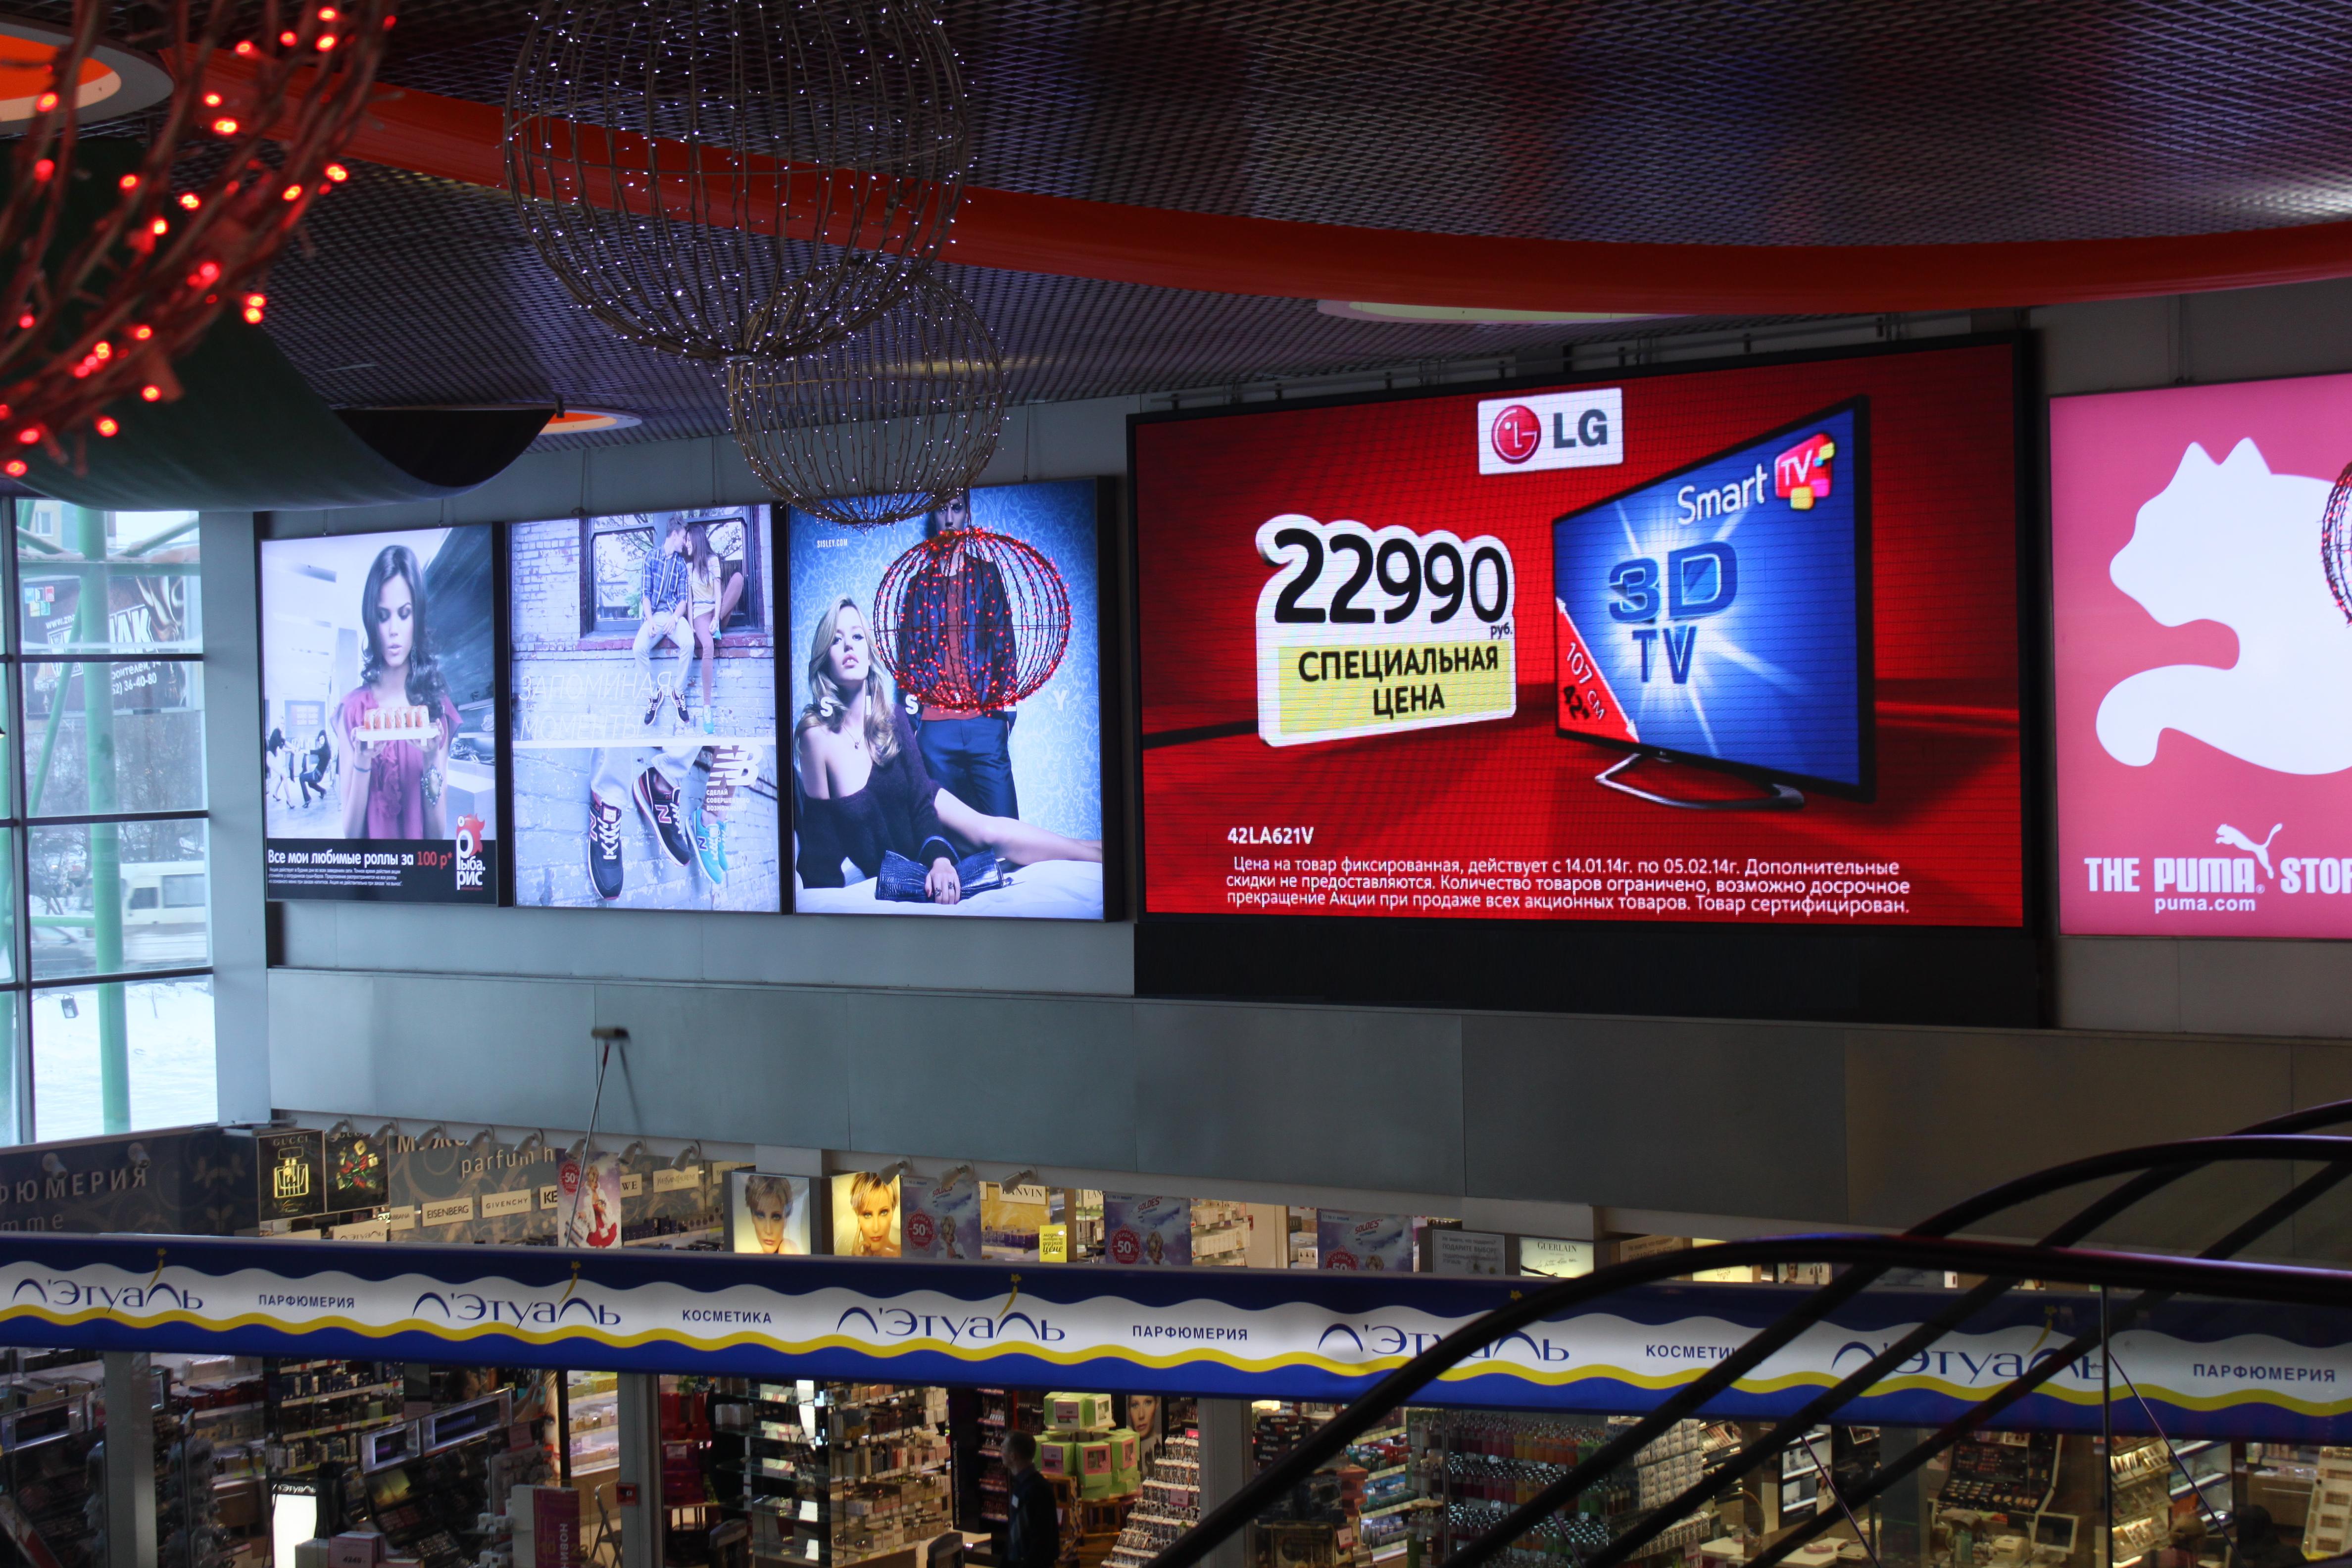 Рекламное торговых центров. Экран в торговом центре. Рекламные экраны в торговых центрах. Led экран в торговом центре. Рекламные экраны в ТРЦ.